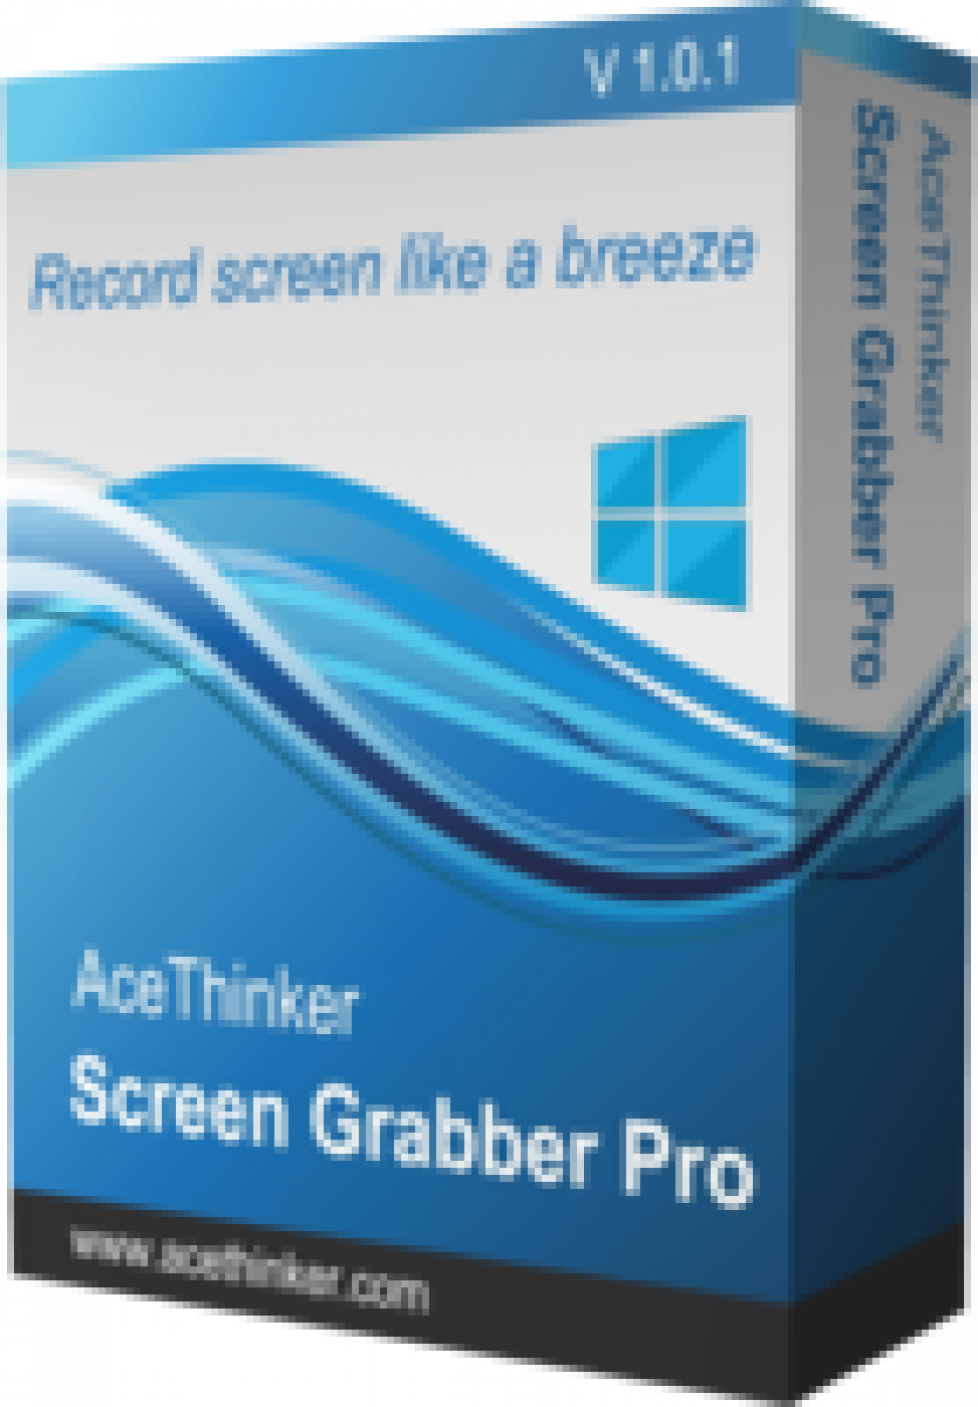 acethinker screen grabber pro license code